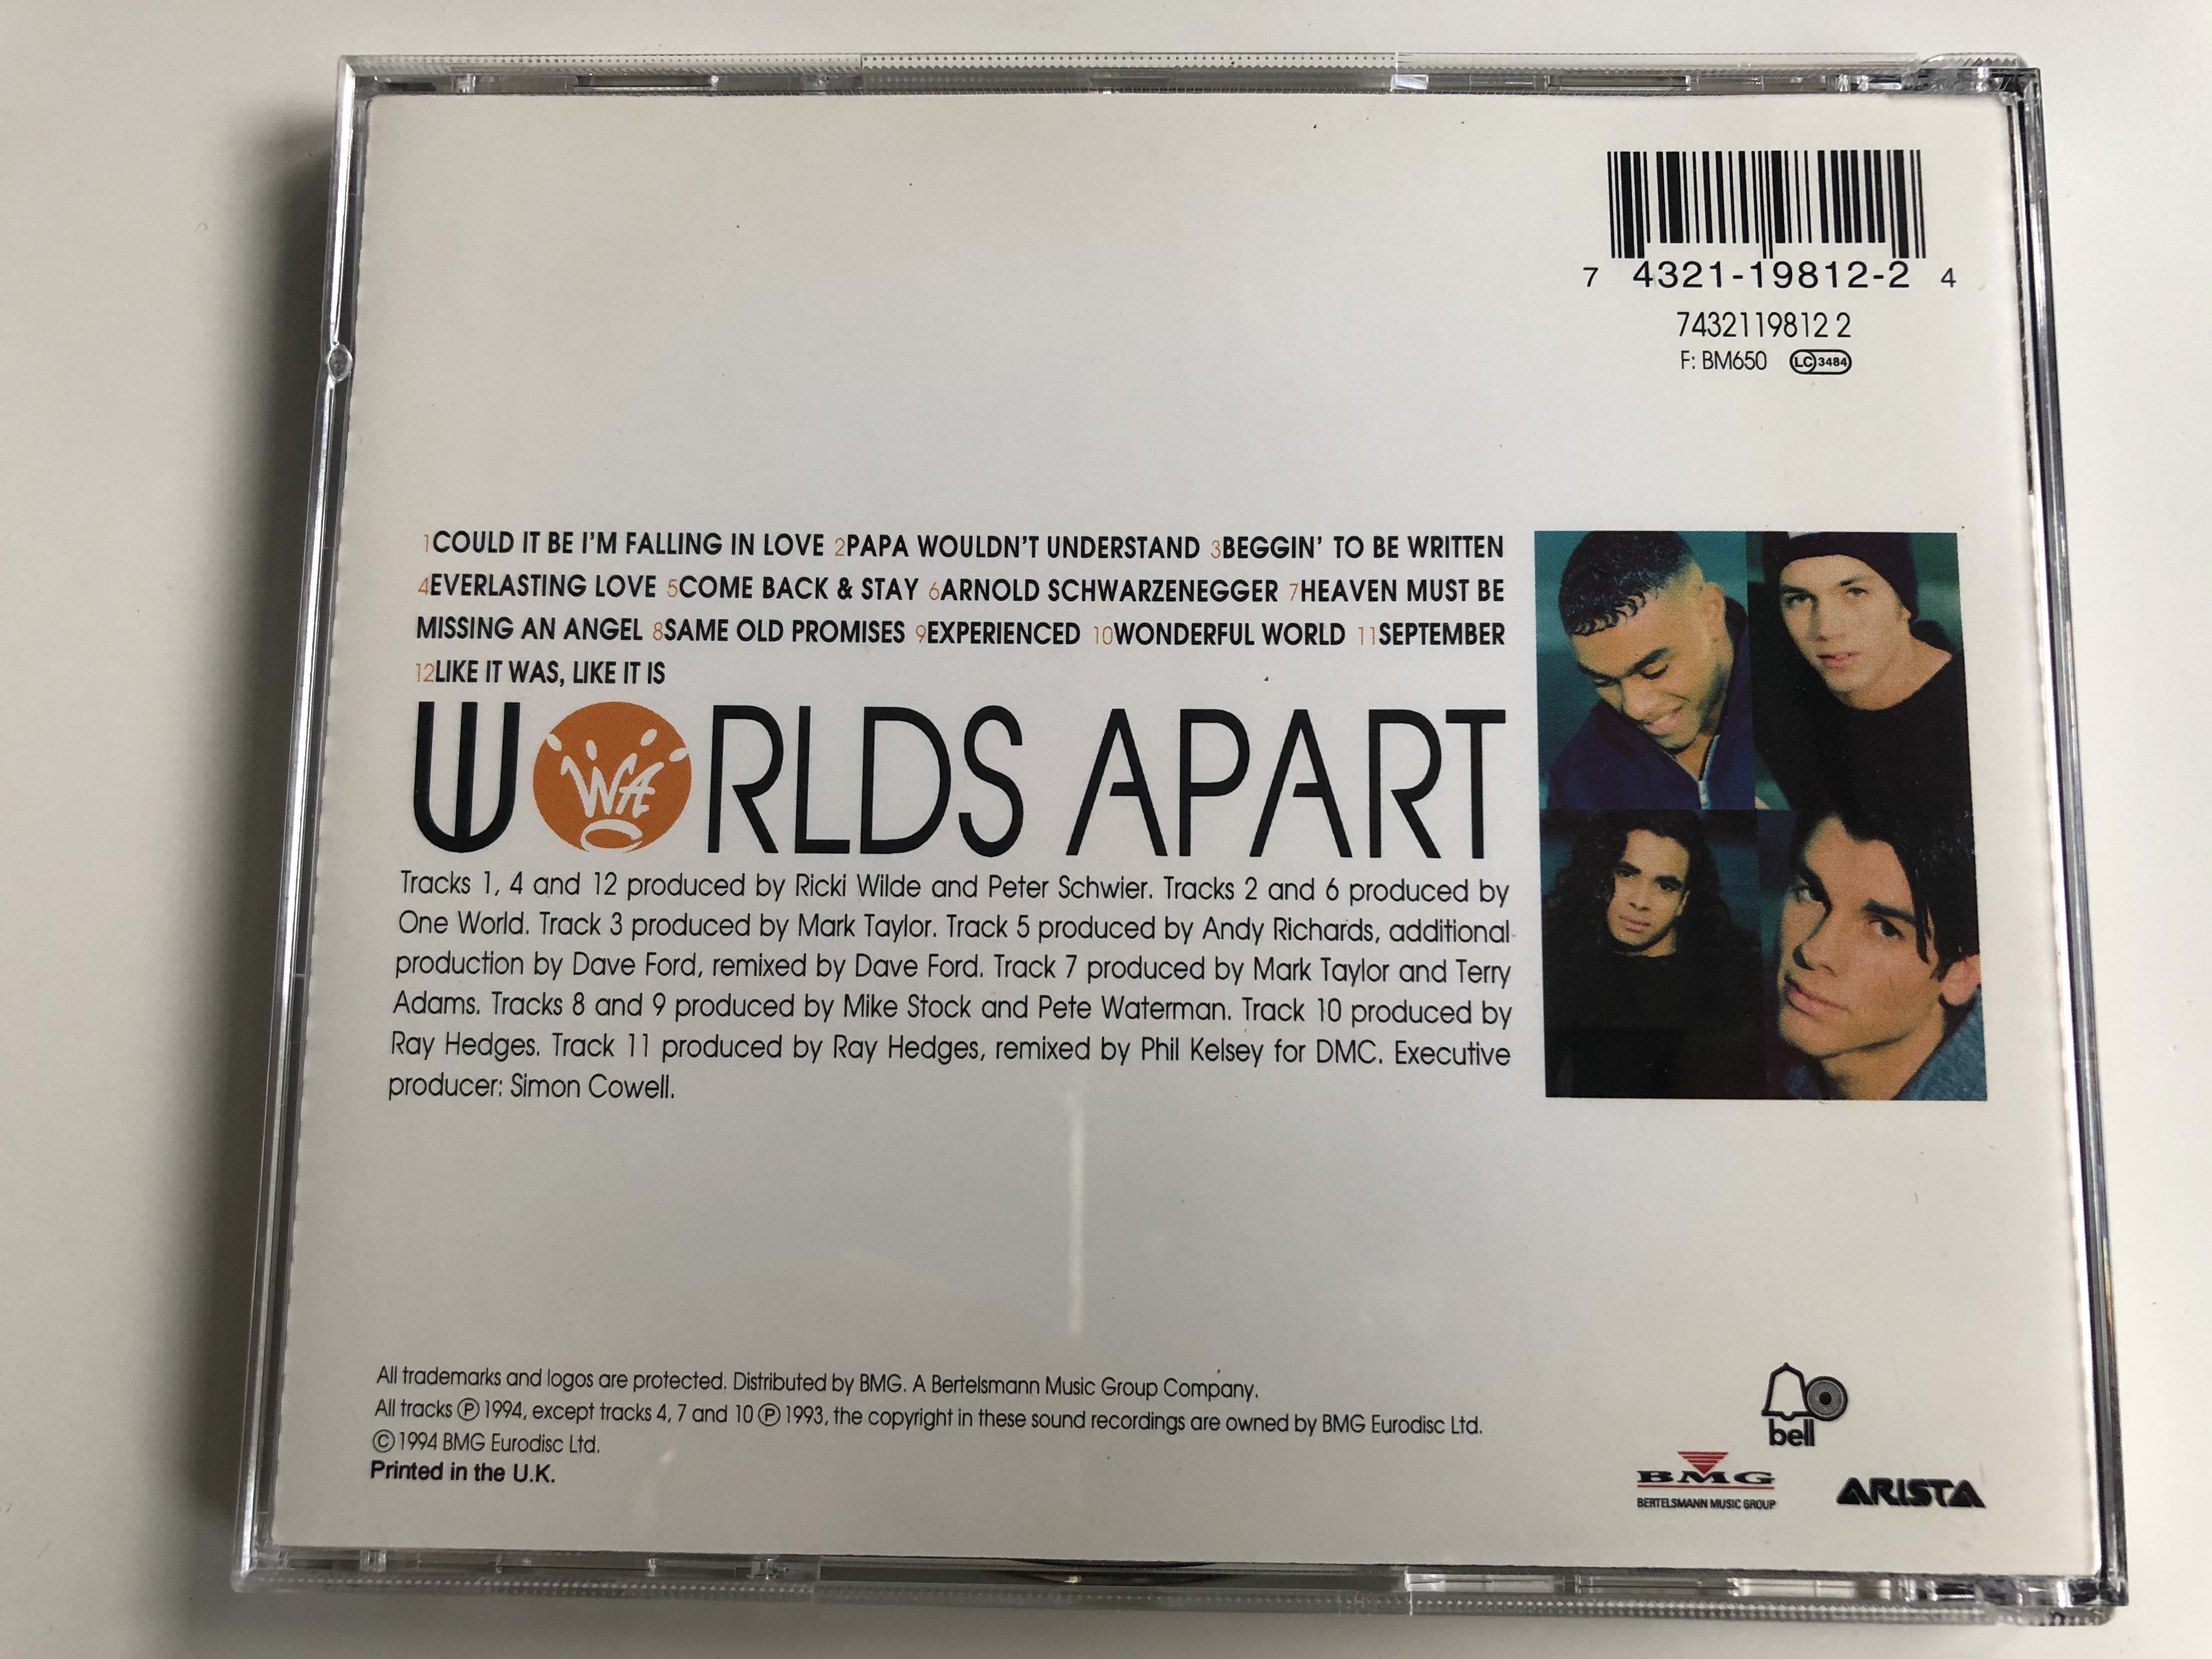 worlds-apart-together-arista-audio-cd-1994-7432119812-2-7-.jpg